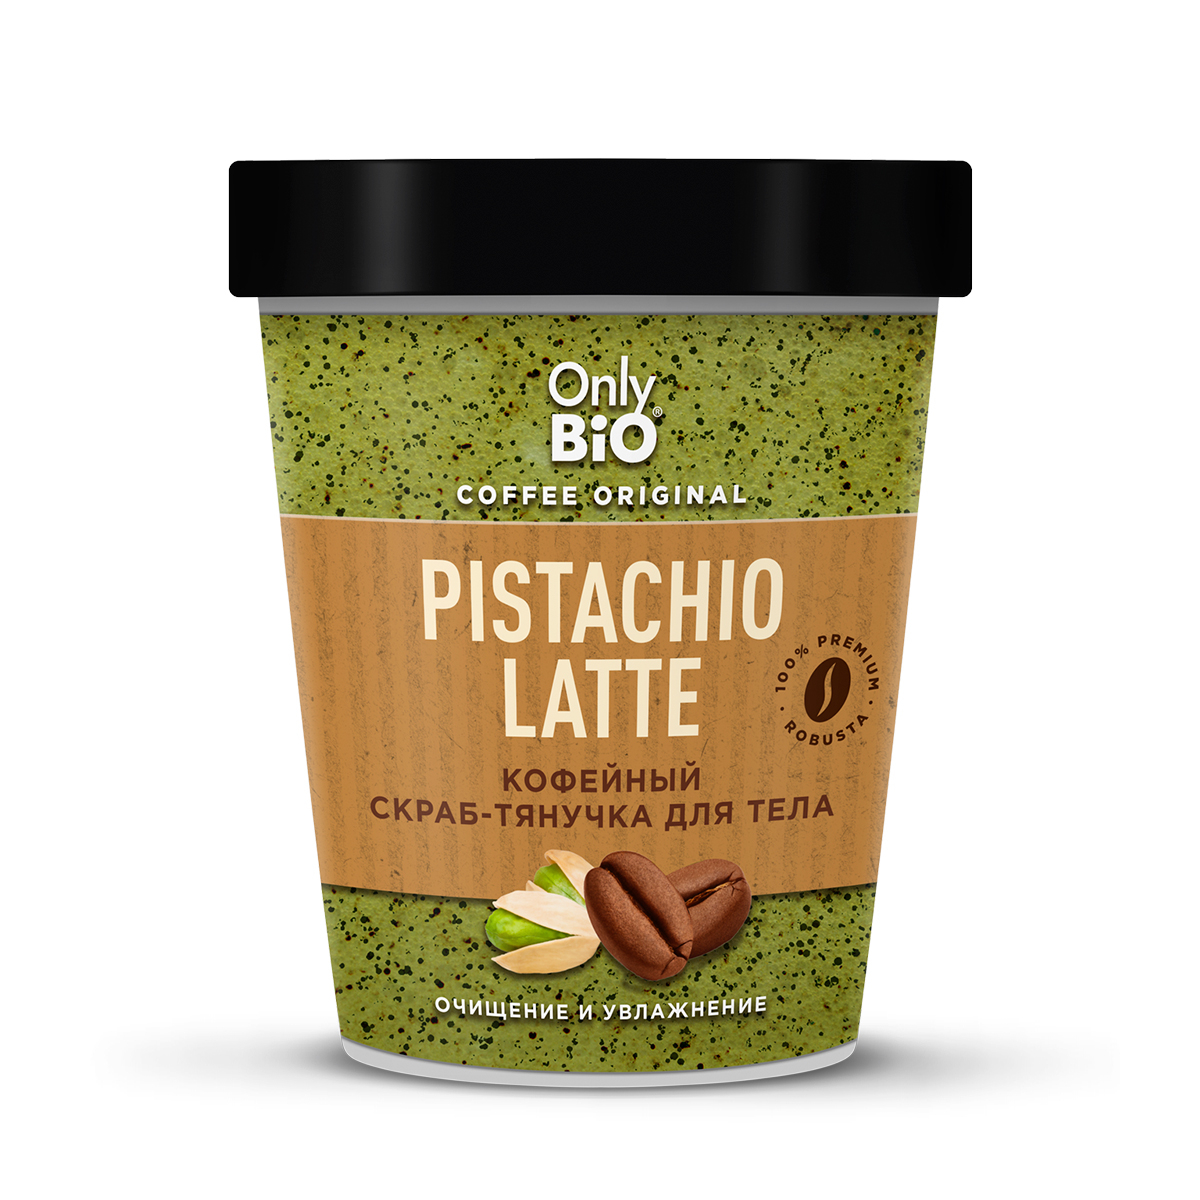 Скраб-тянучка для тела Only Bio Coffee Original Pistachio Latte кофейный, 230 мл скраб тянучка для тела kopusha пердыня 250г